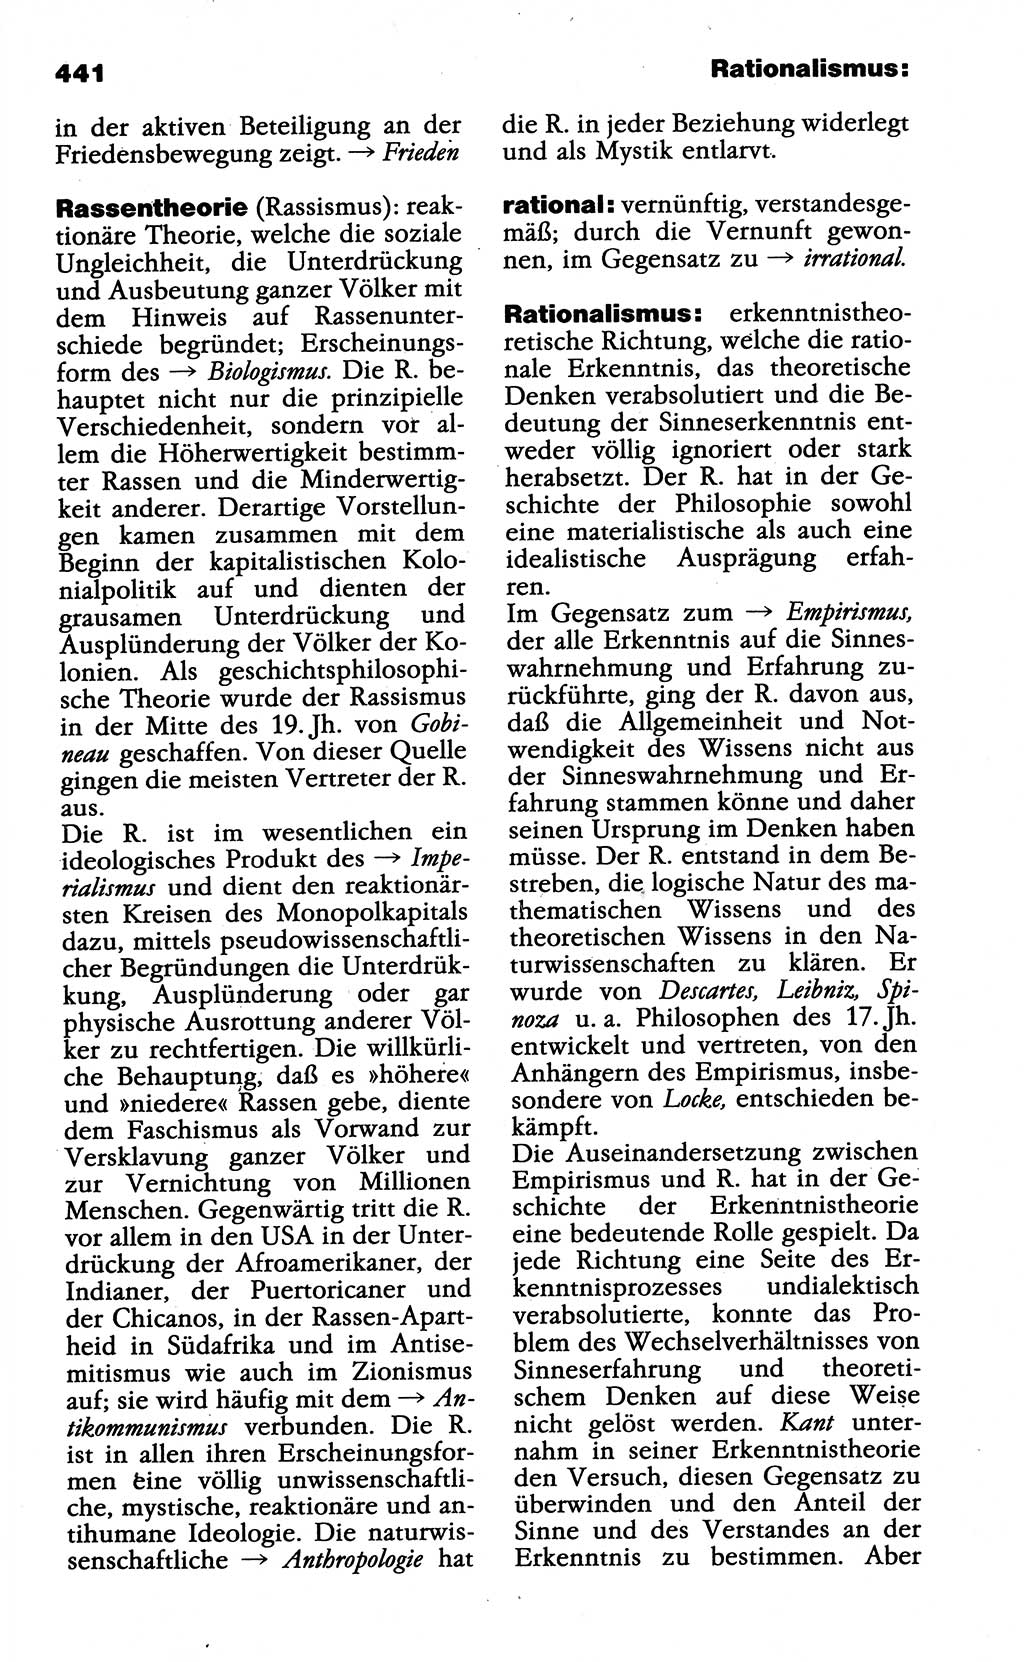 Wörterbuch der marxistisch-leninistischen Philosophie [Deutsche Demokratische Republik (DDR)] 1985, Seite 441 (Wb. ML Phil. DDR 1985, S. 441)